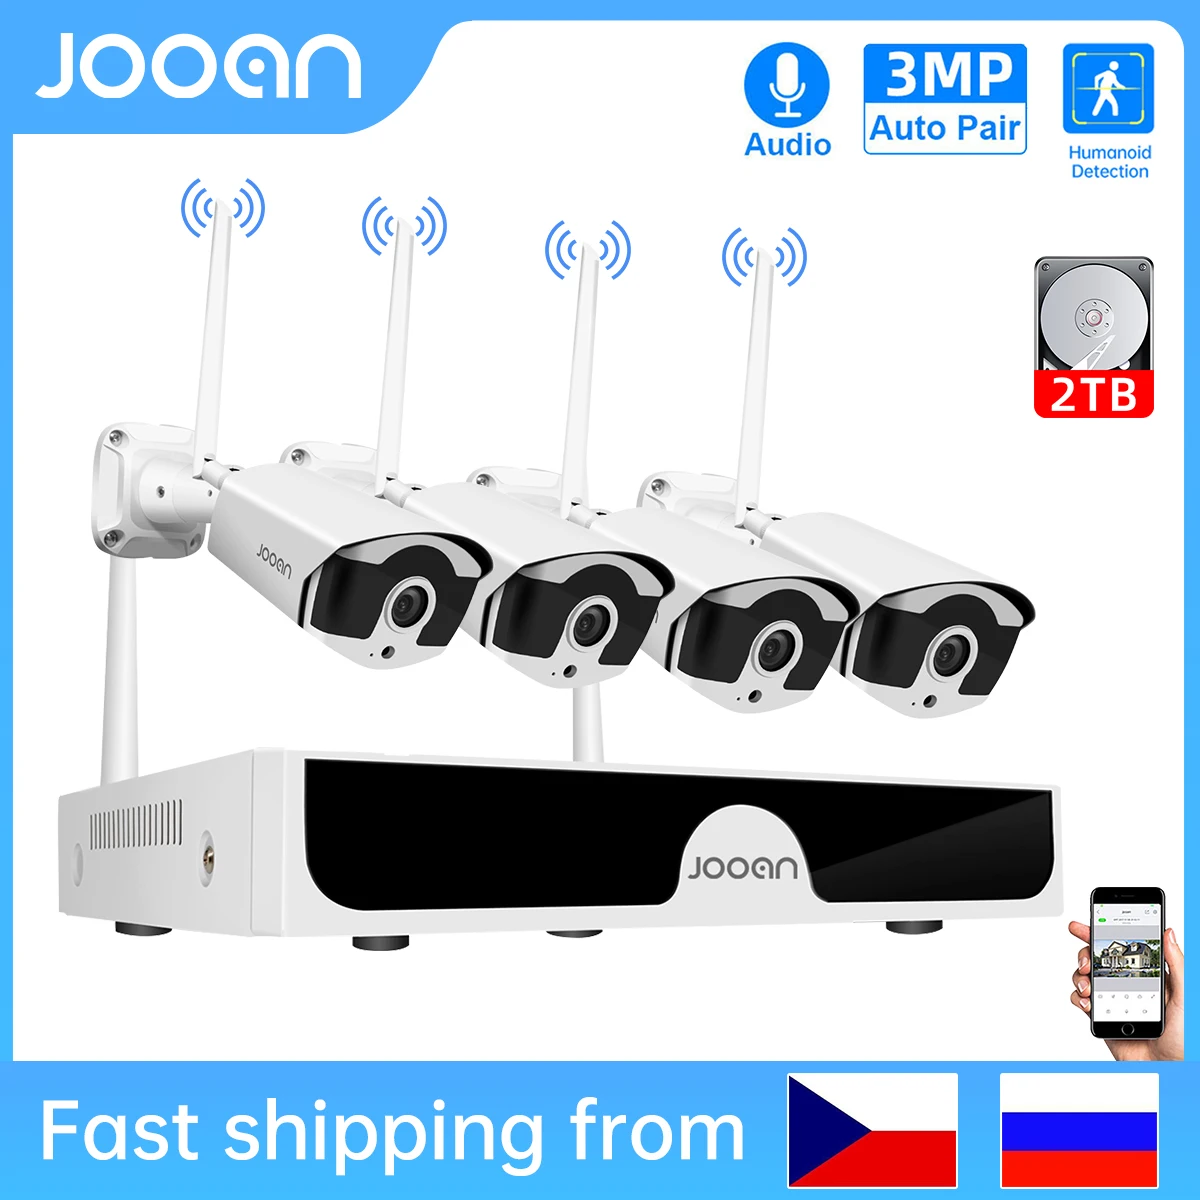 Jooan-Sistema de videovigilancia inalámbrico para exteriores, Kit de videovigilancia NVR de 8 canales, 3MP, grabación de Audio, P2P, Wifi, IP